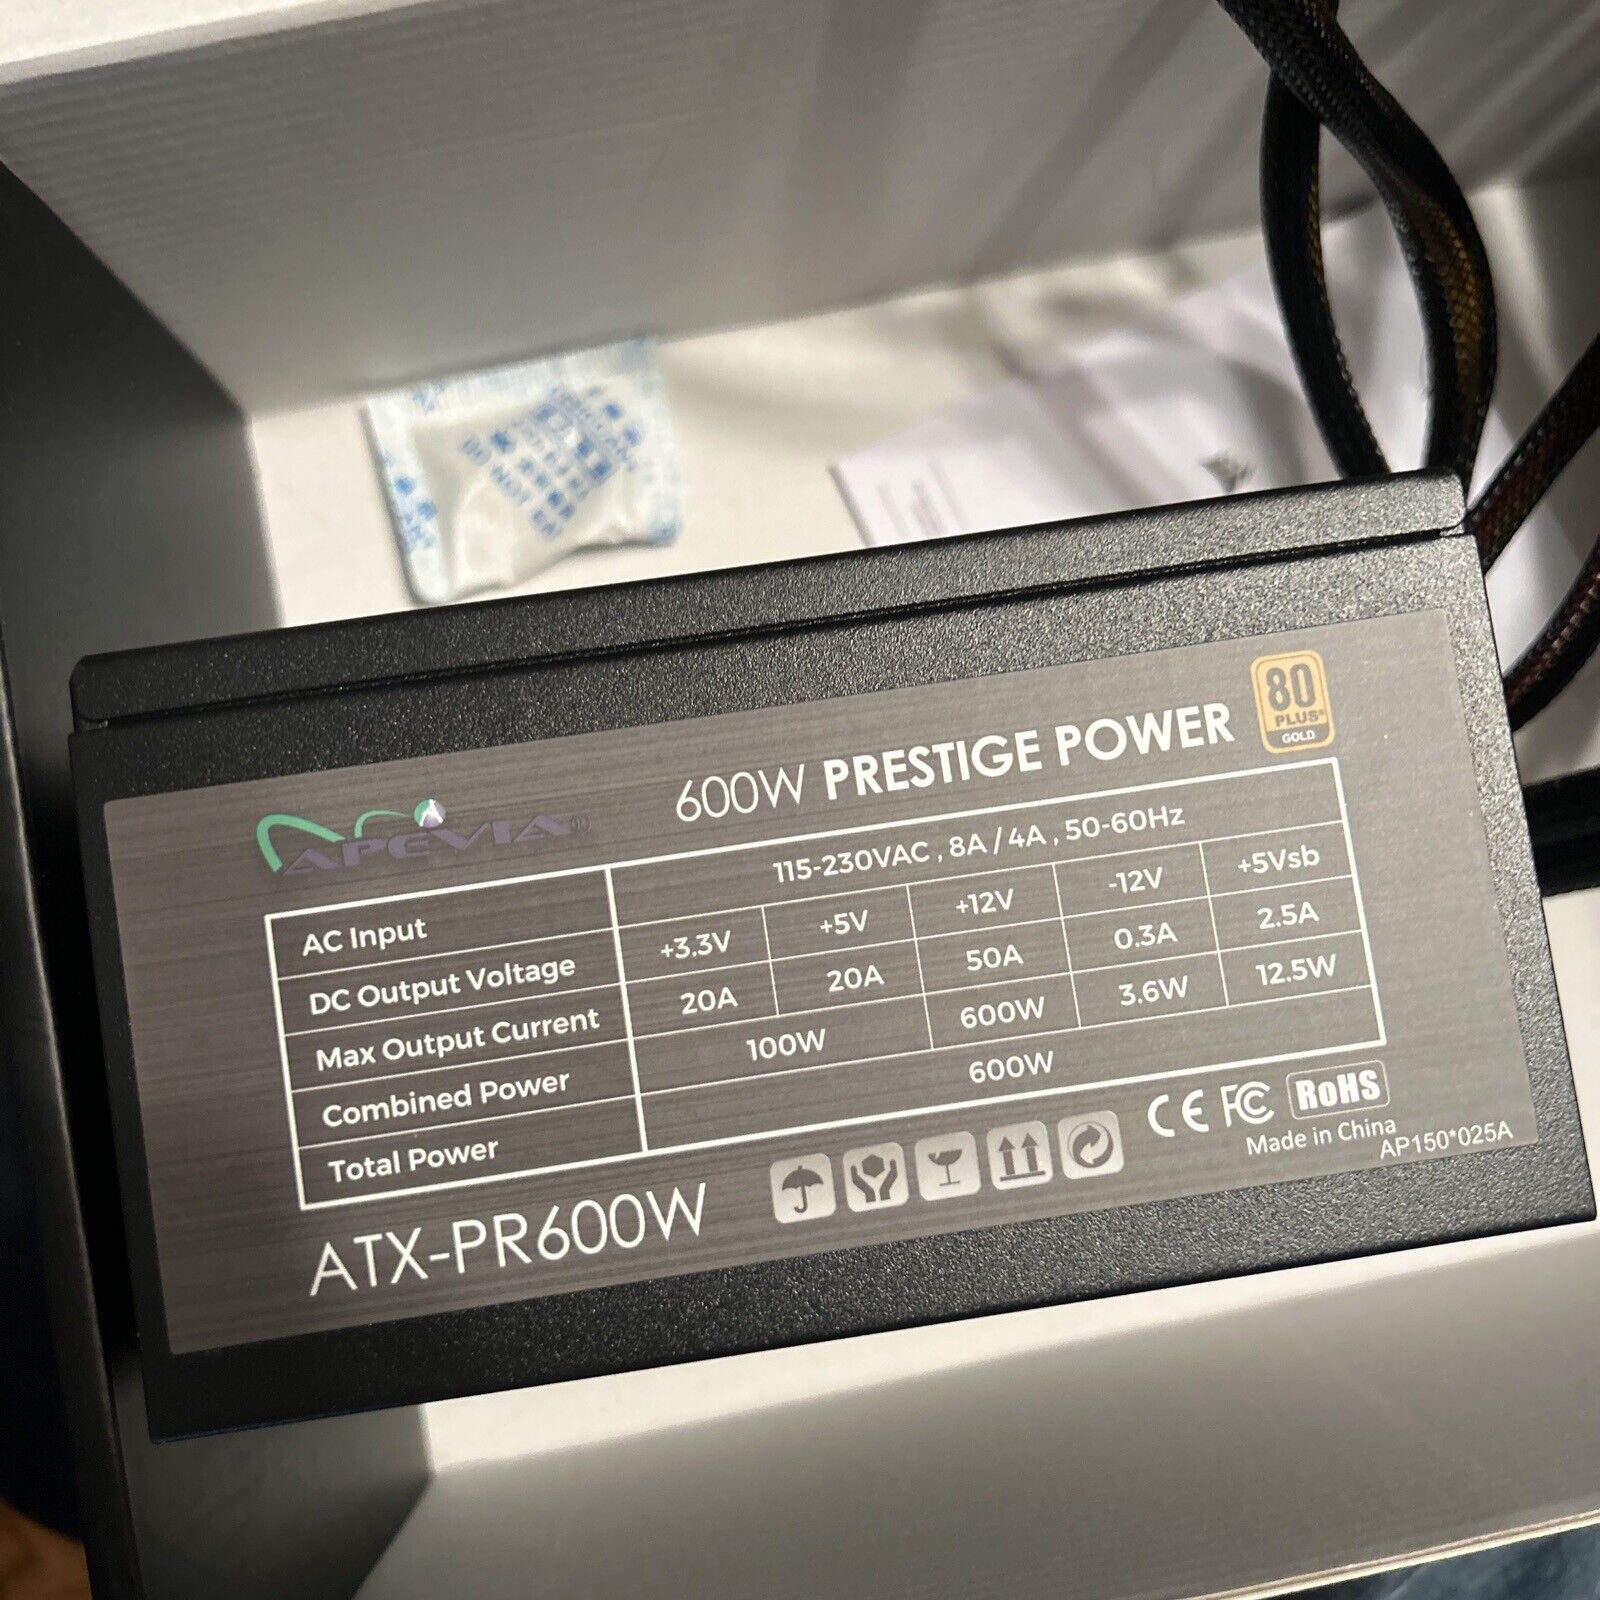 Apevia Prestige Series ATX-PR600W 600W 80 PLUS Gold ATX12V Power Supply PSU ATX